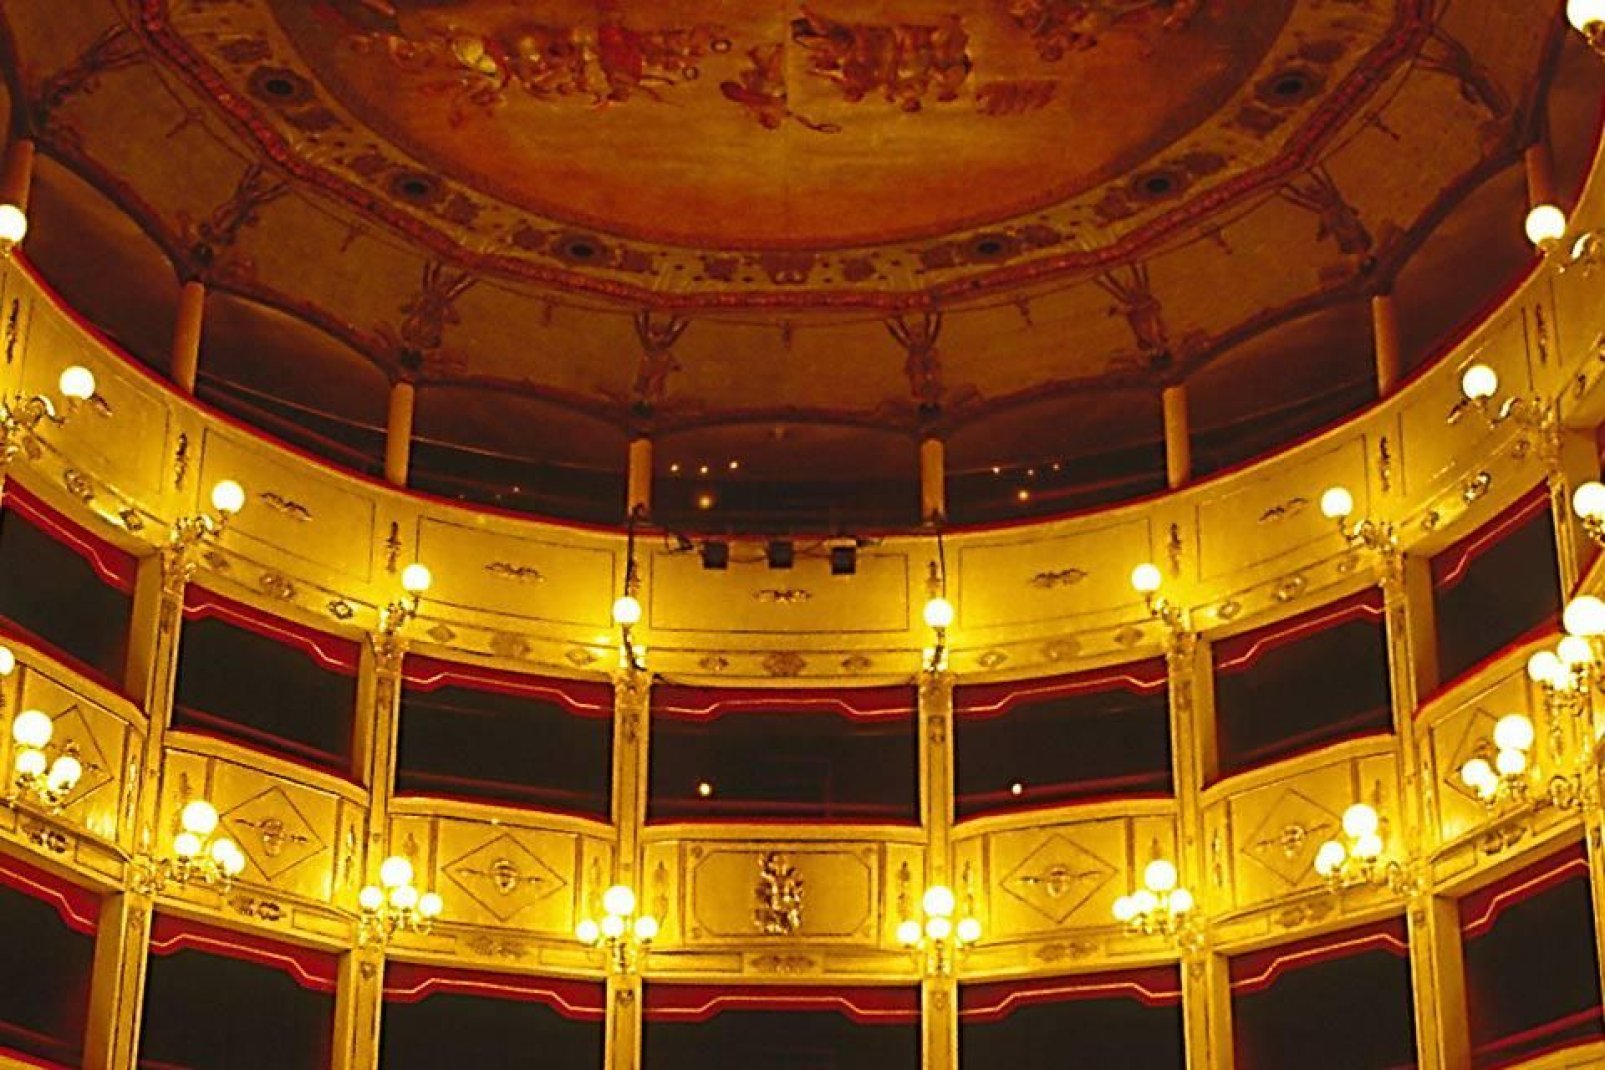 L'inauguration eut lieu le 26 janvier 1881 en présence du roi Humbert Ier, du prince Amédée et de la reine d'Italie, qui assistèrent à une représentation de la Traviata.